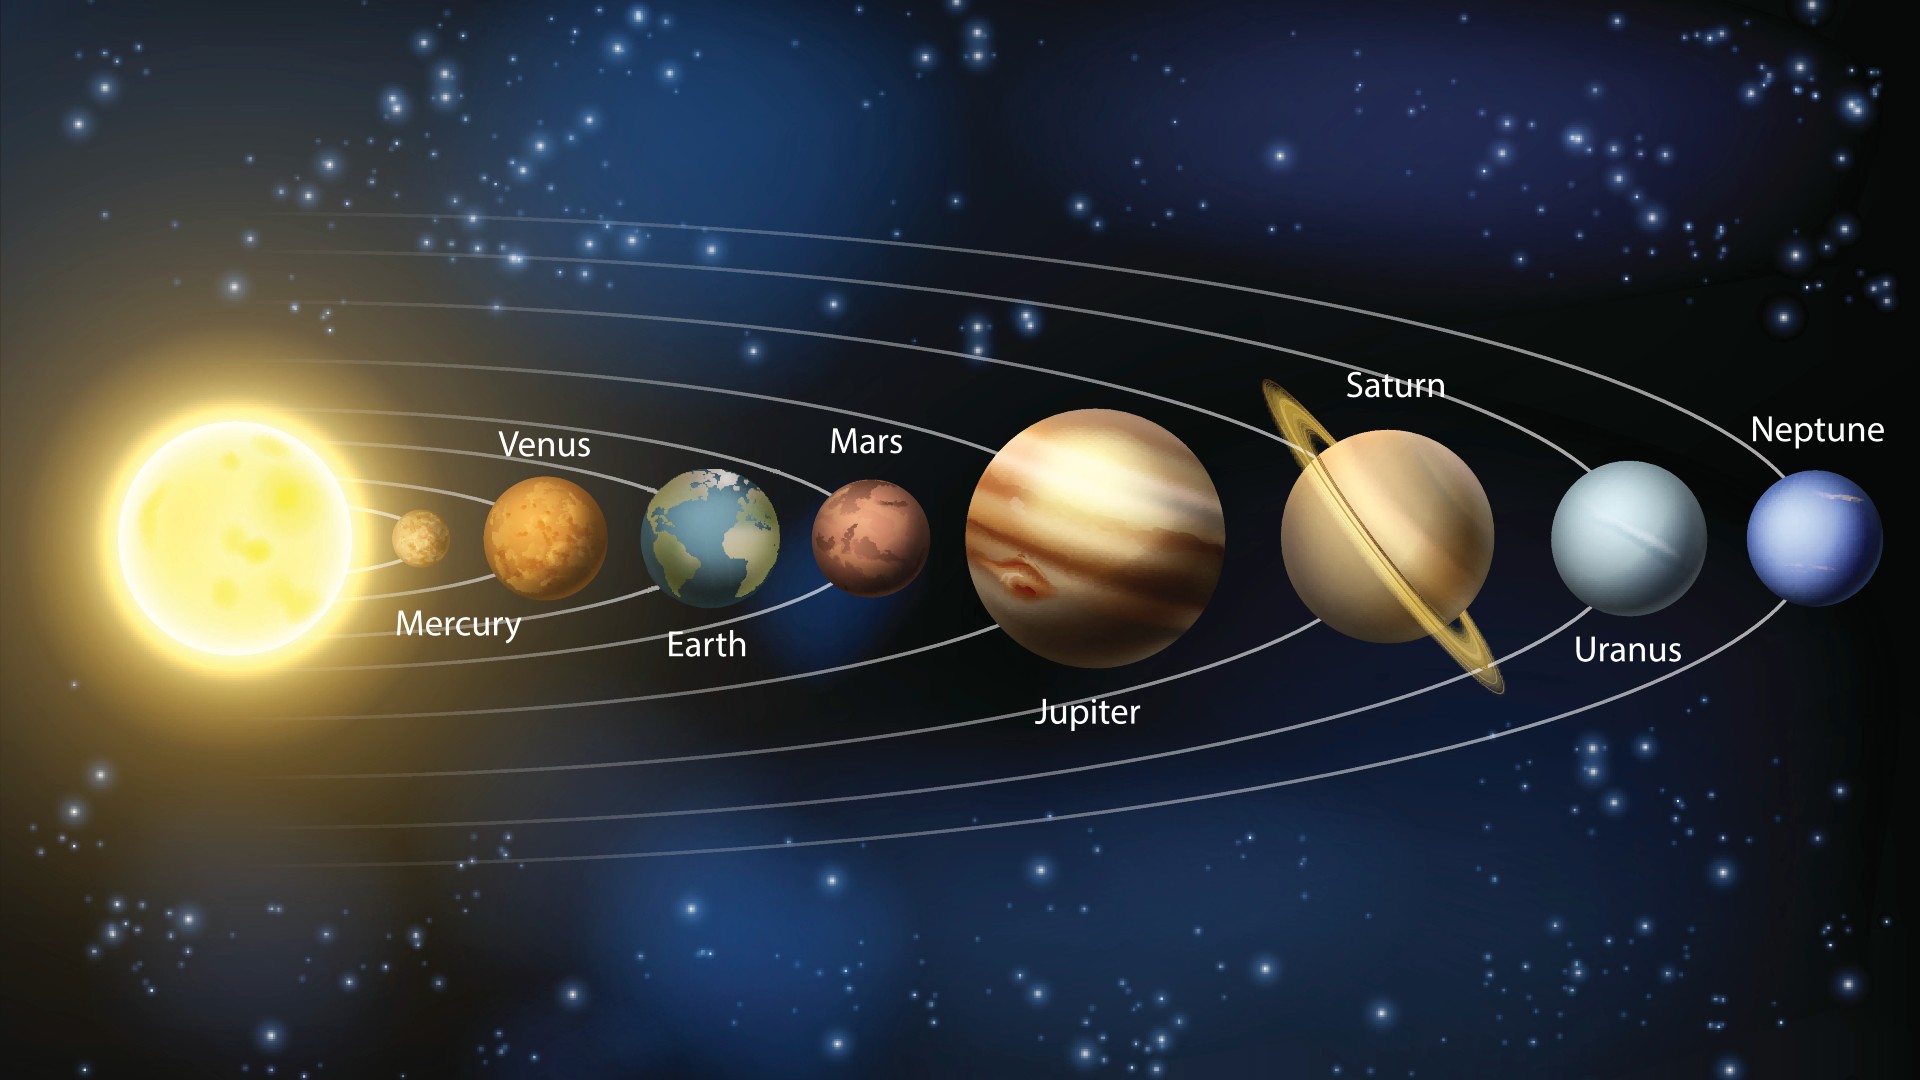 Ein Diagramm der Planeten in unserem Sonnensystem mit den Namen der Planeten.  Von links nach rechts: Sonne (hellgelb), Merkur (kleinste, braun), Venus (etwas größer, rotbraun), Erde (etwas größer, blau und grün), Mars (etwas kleiner, rot), Jupiter (größter , braun und beige), Saturn (etwas kleiner, beige mit einem gelben Ring darum), Uranus (kleiner, aber größer als die Erde grau) und Neptun (etwas kleiner, blau).  Es gibt auch weiße Ringe, um die Umlaufbahn jedes Planeten anzuzeigen.